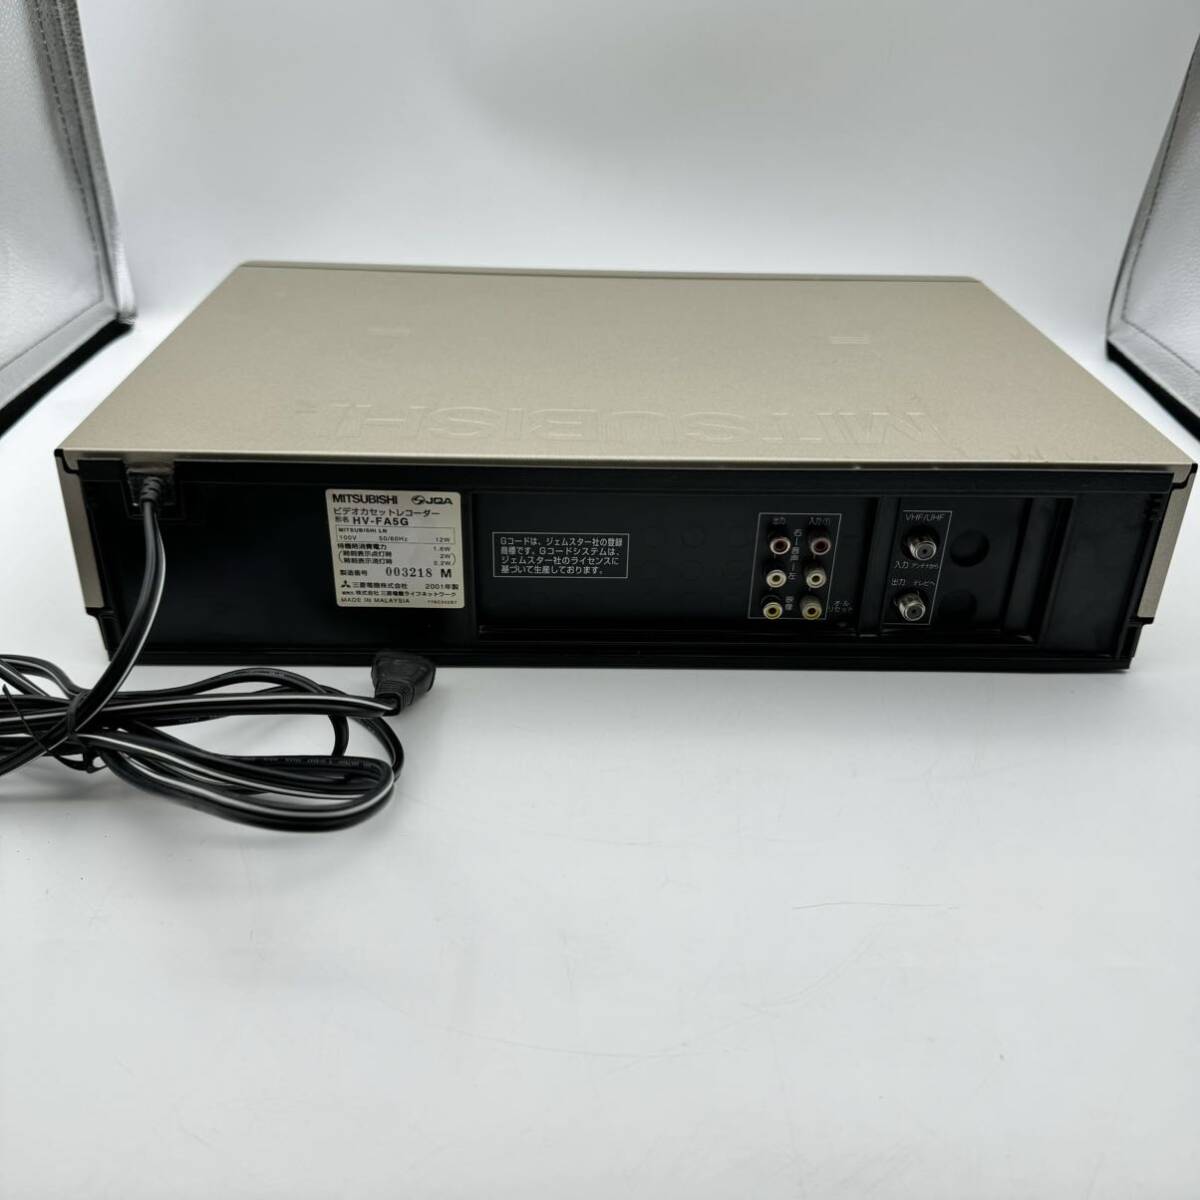 MITSUBISHI Mitsubishi SuperWinder 500 VHS видеодека кассетная магнитола HV-FA5G Gold Junk retro подлинная вещь с дистанционным пультом 